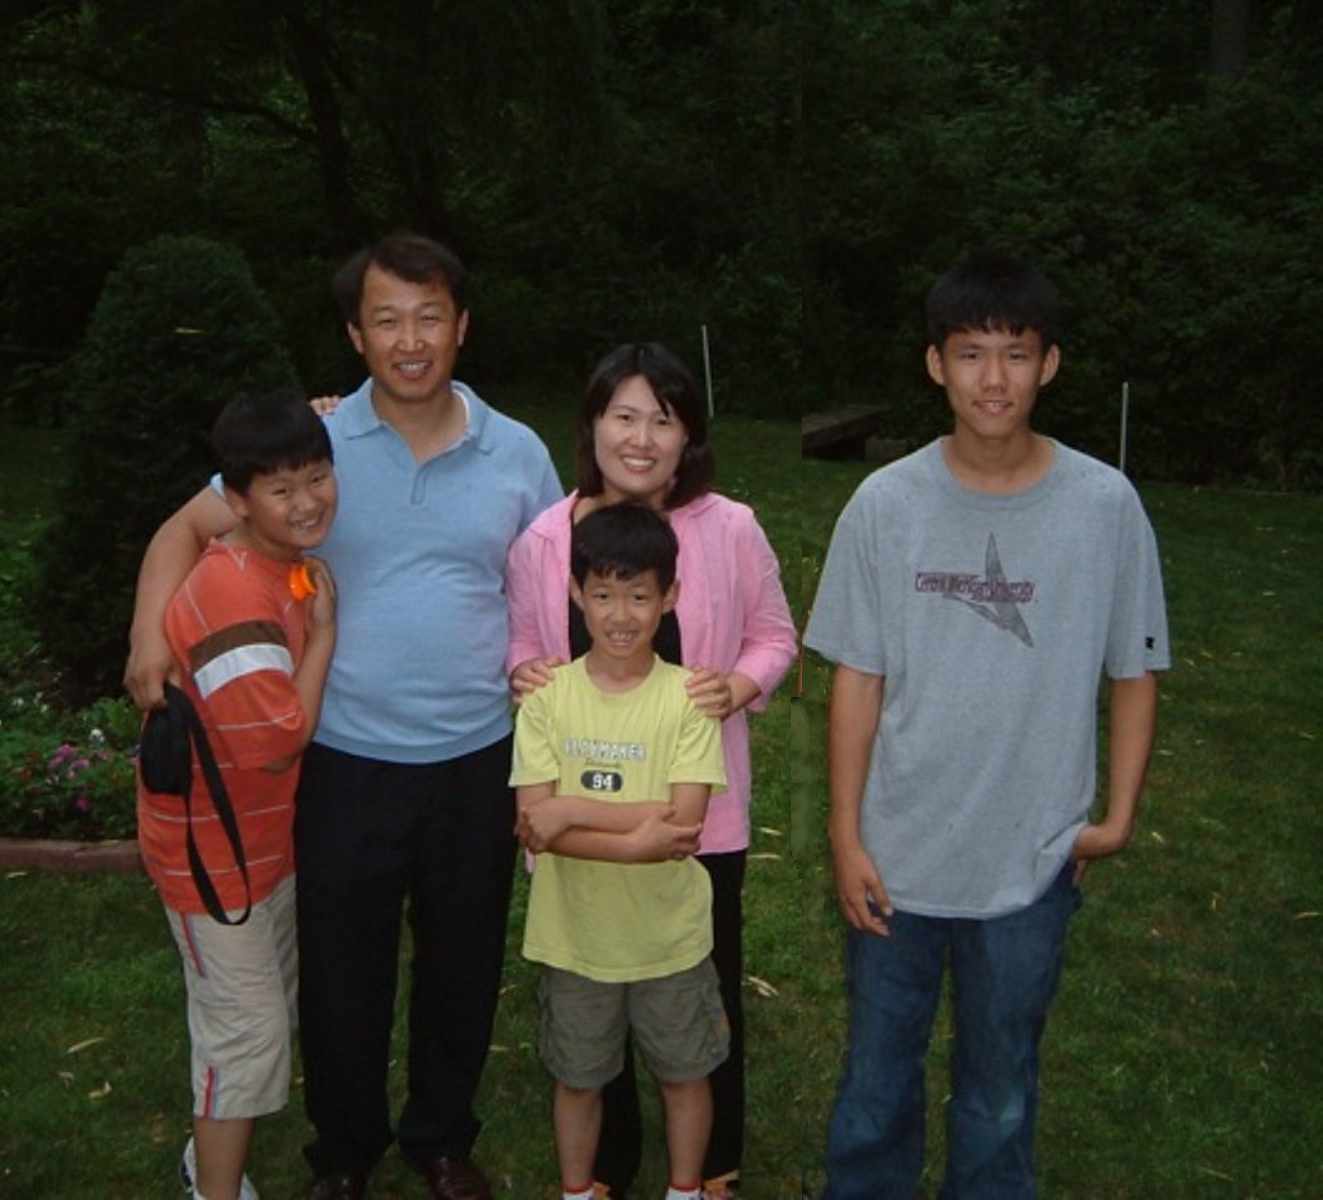 The Yoo Family